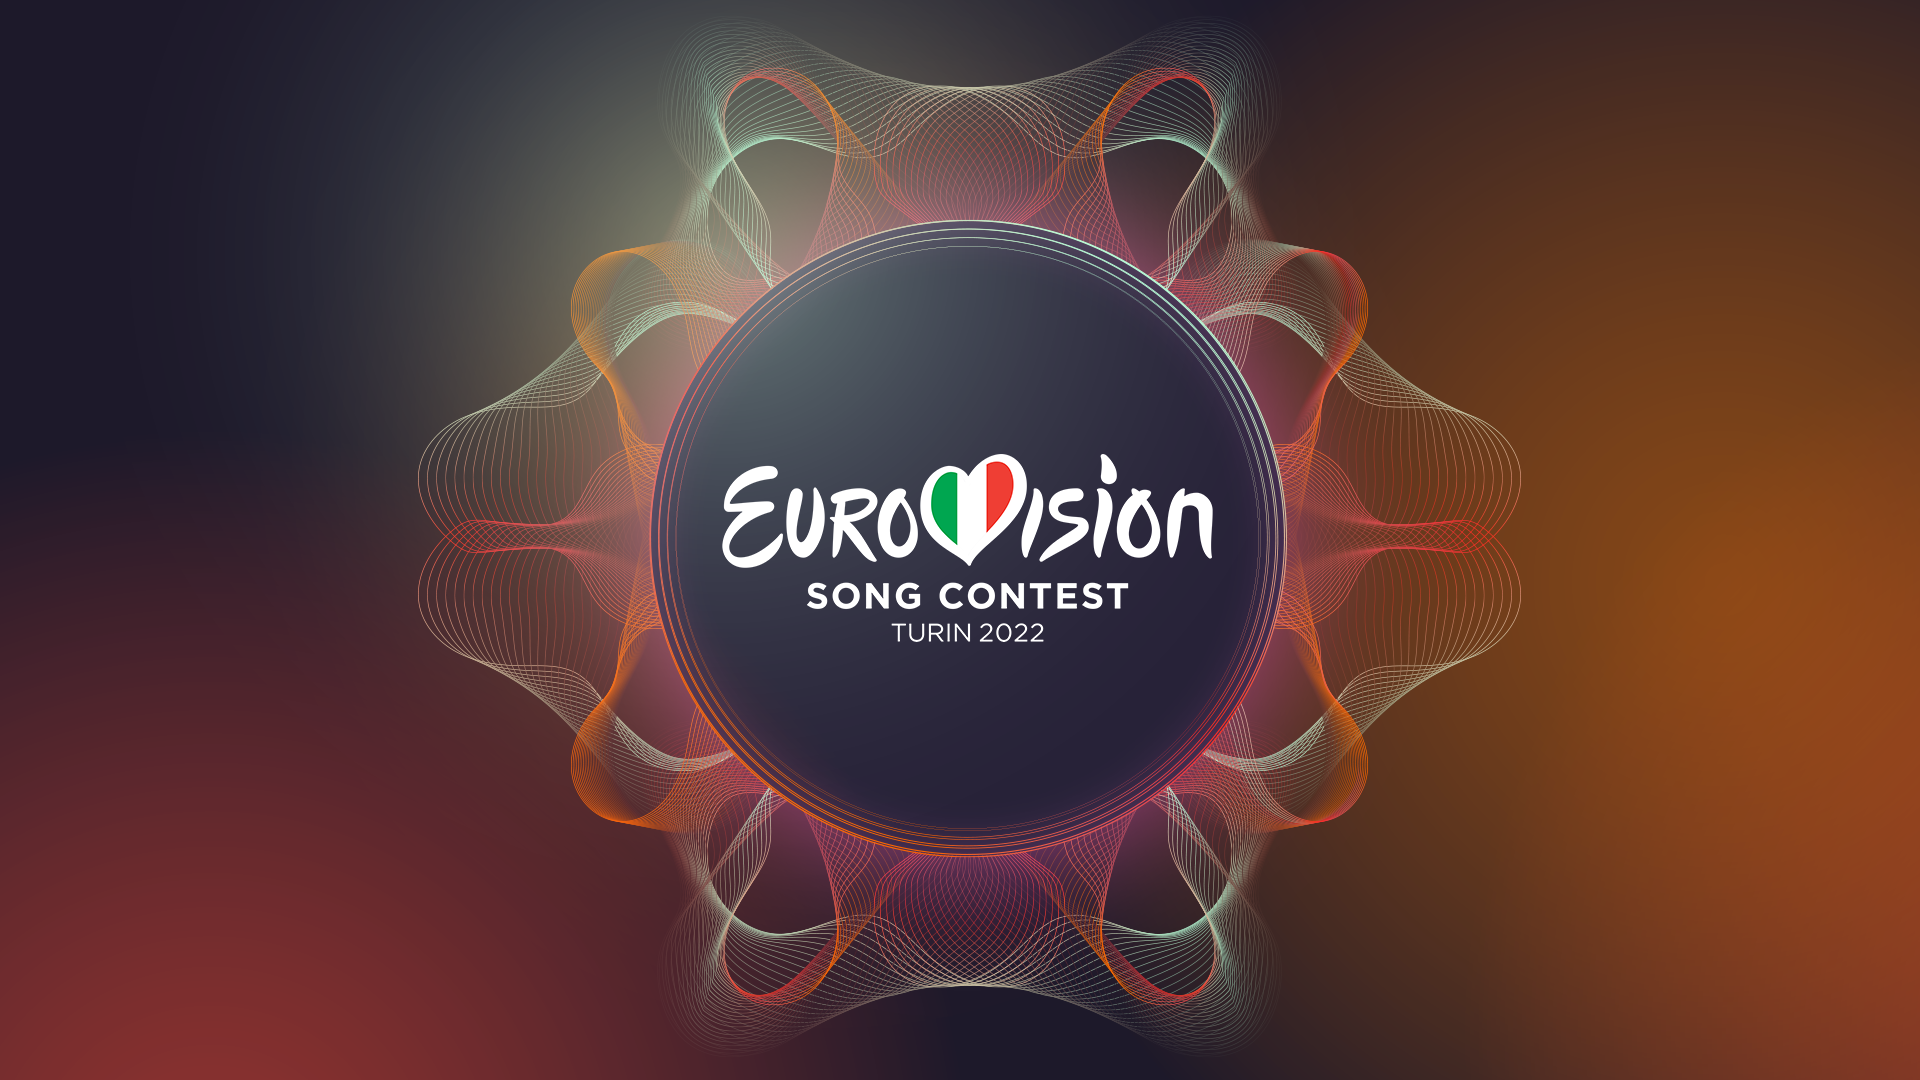 EUROVISION 2022 LOGO